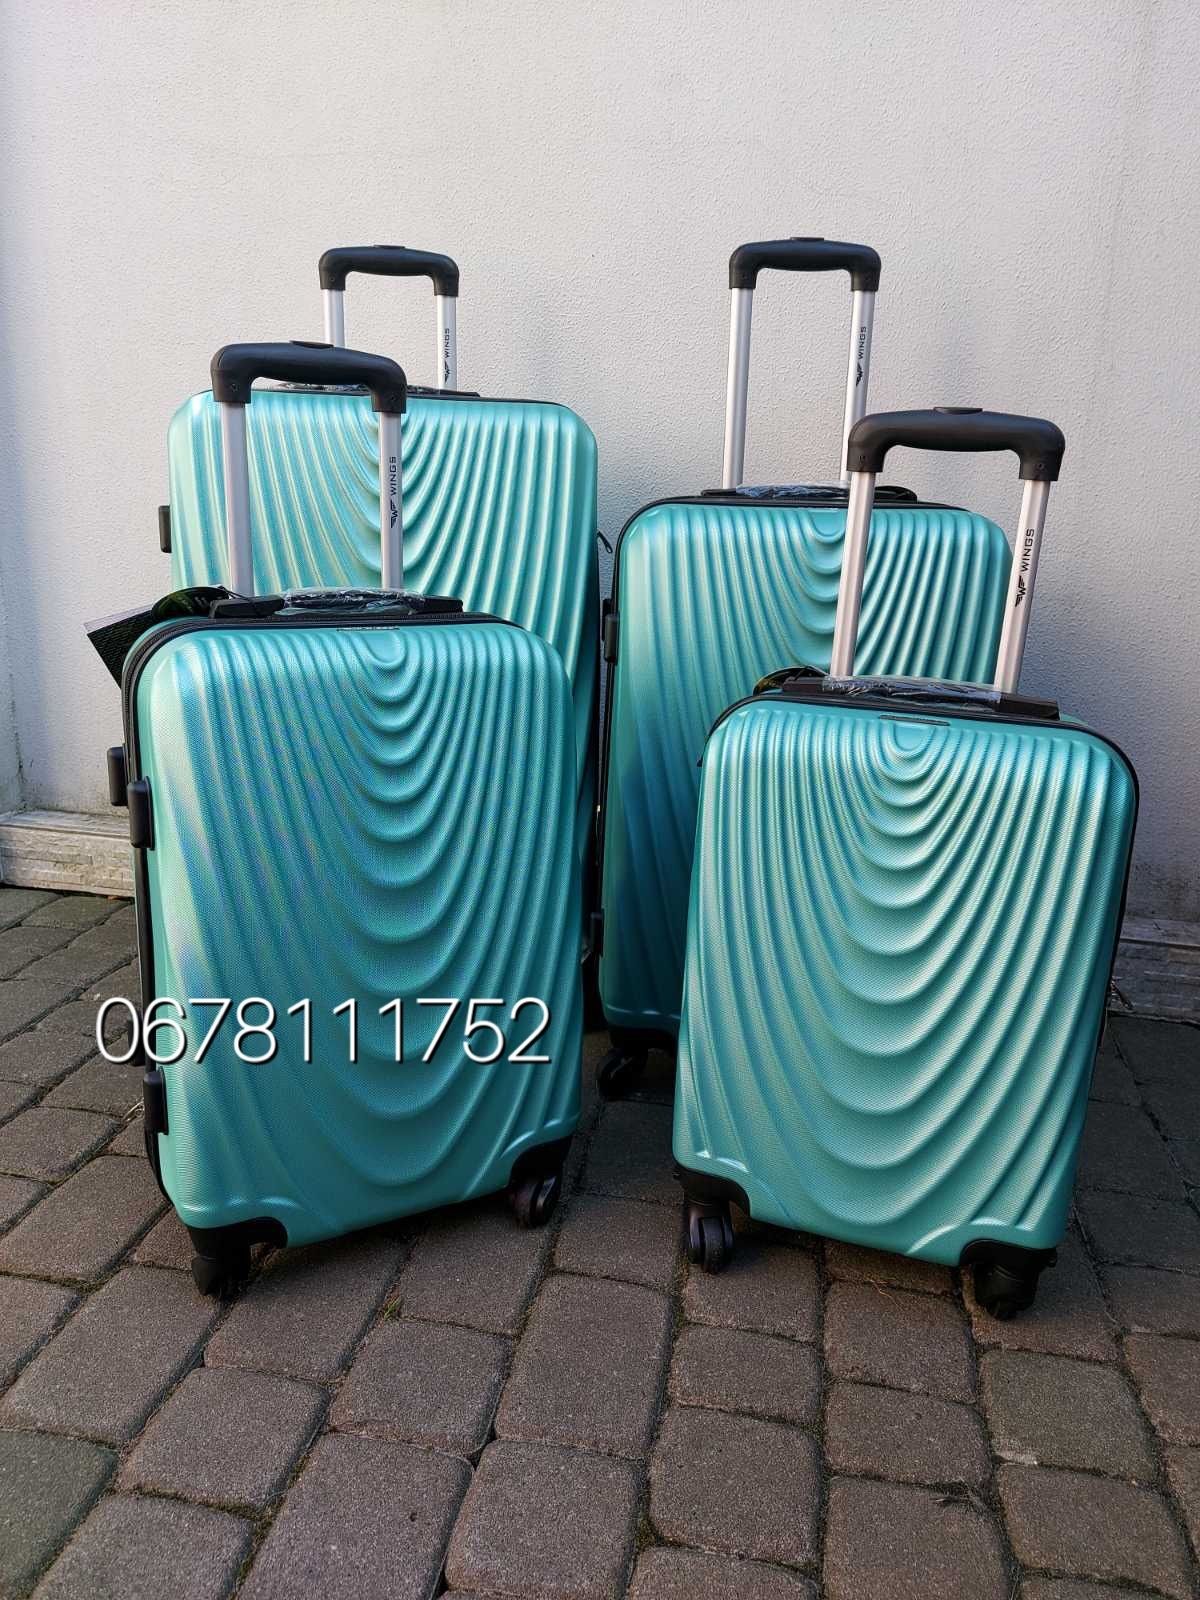 WINGS 304 Польща XS/S/M/L валізи чемоданы сумки на колесах  поклажа